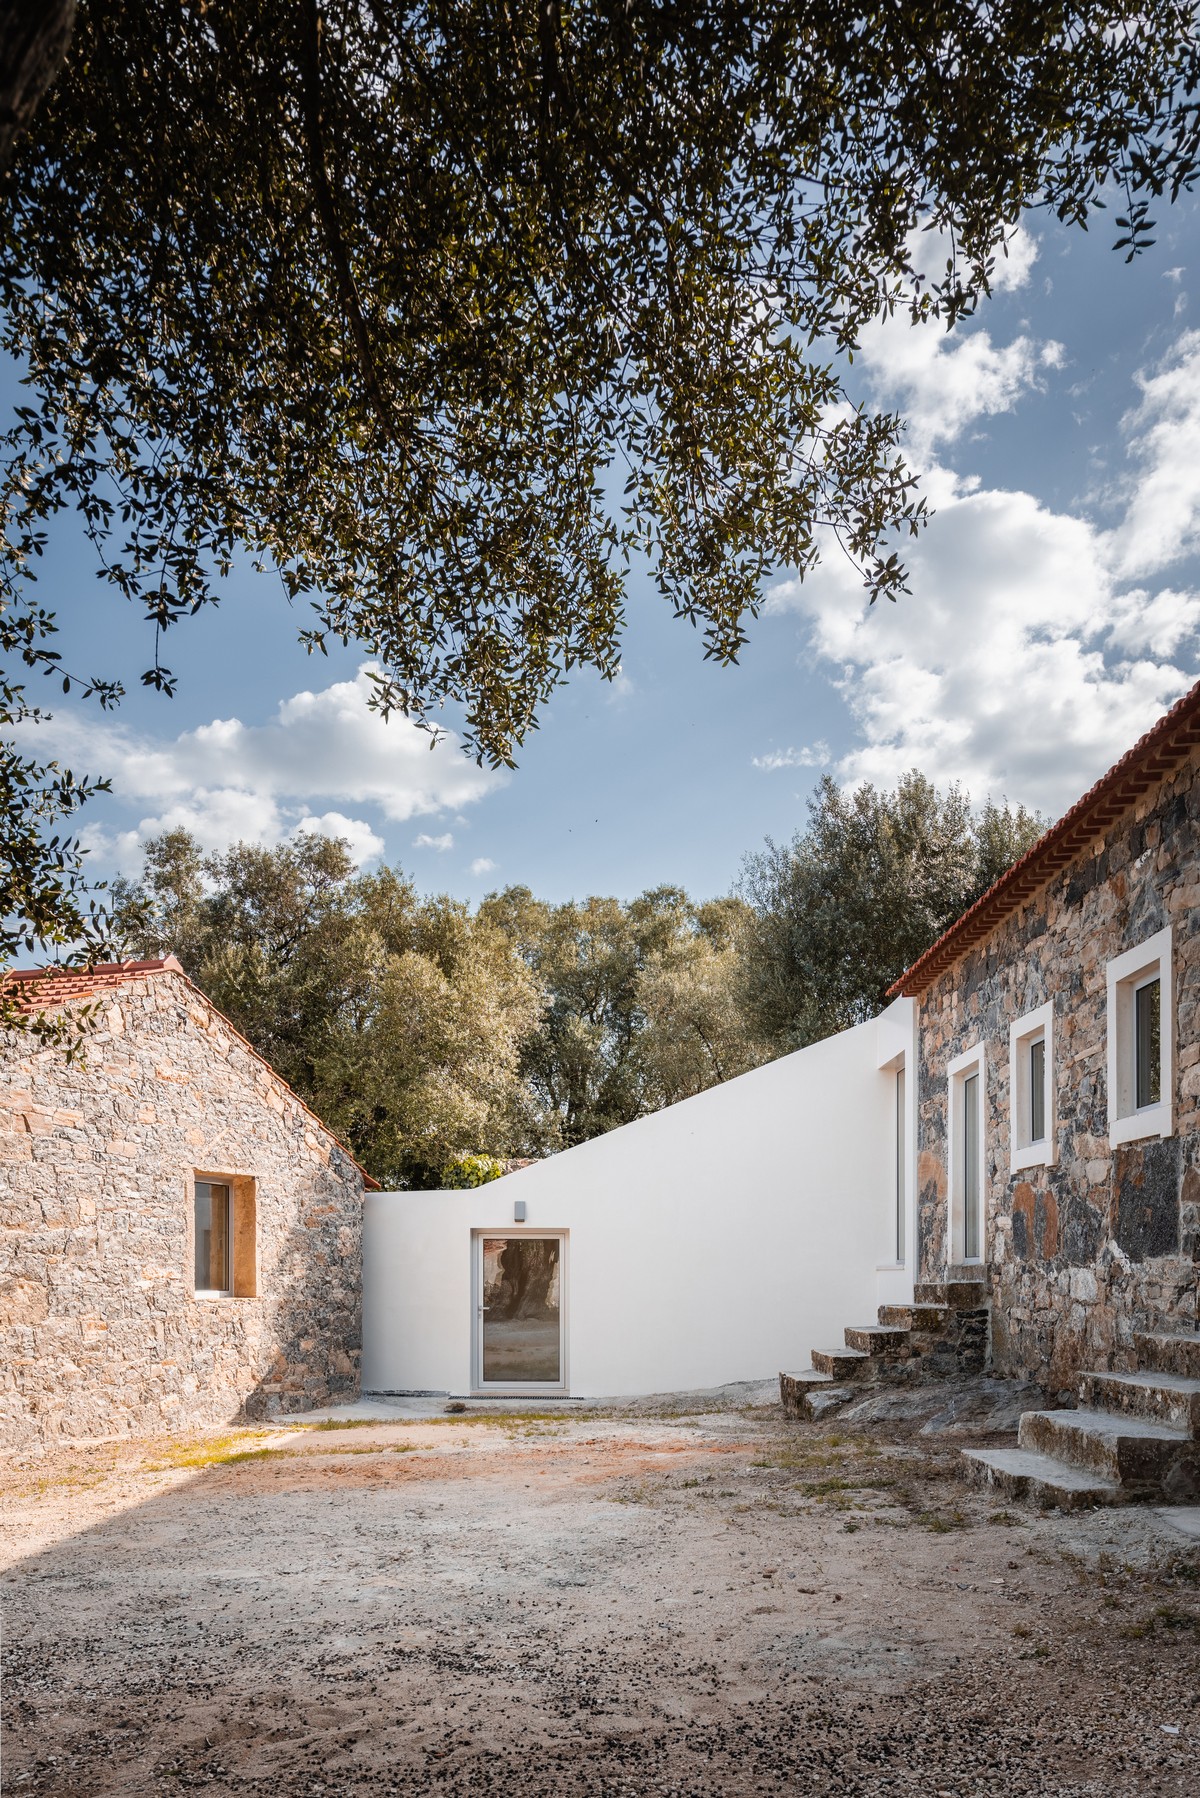 Новый старый дом в Португалии между, существующие, возможности, образуя, через, одновременно, каждой, проект, объёмы, ввести, соединительный, новый, решили, элемент, Ответ, почти, немедленное, решение, объединить, восстановить